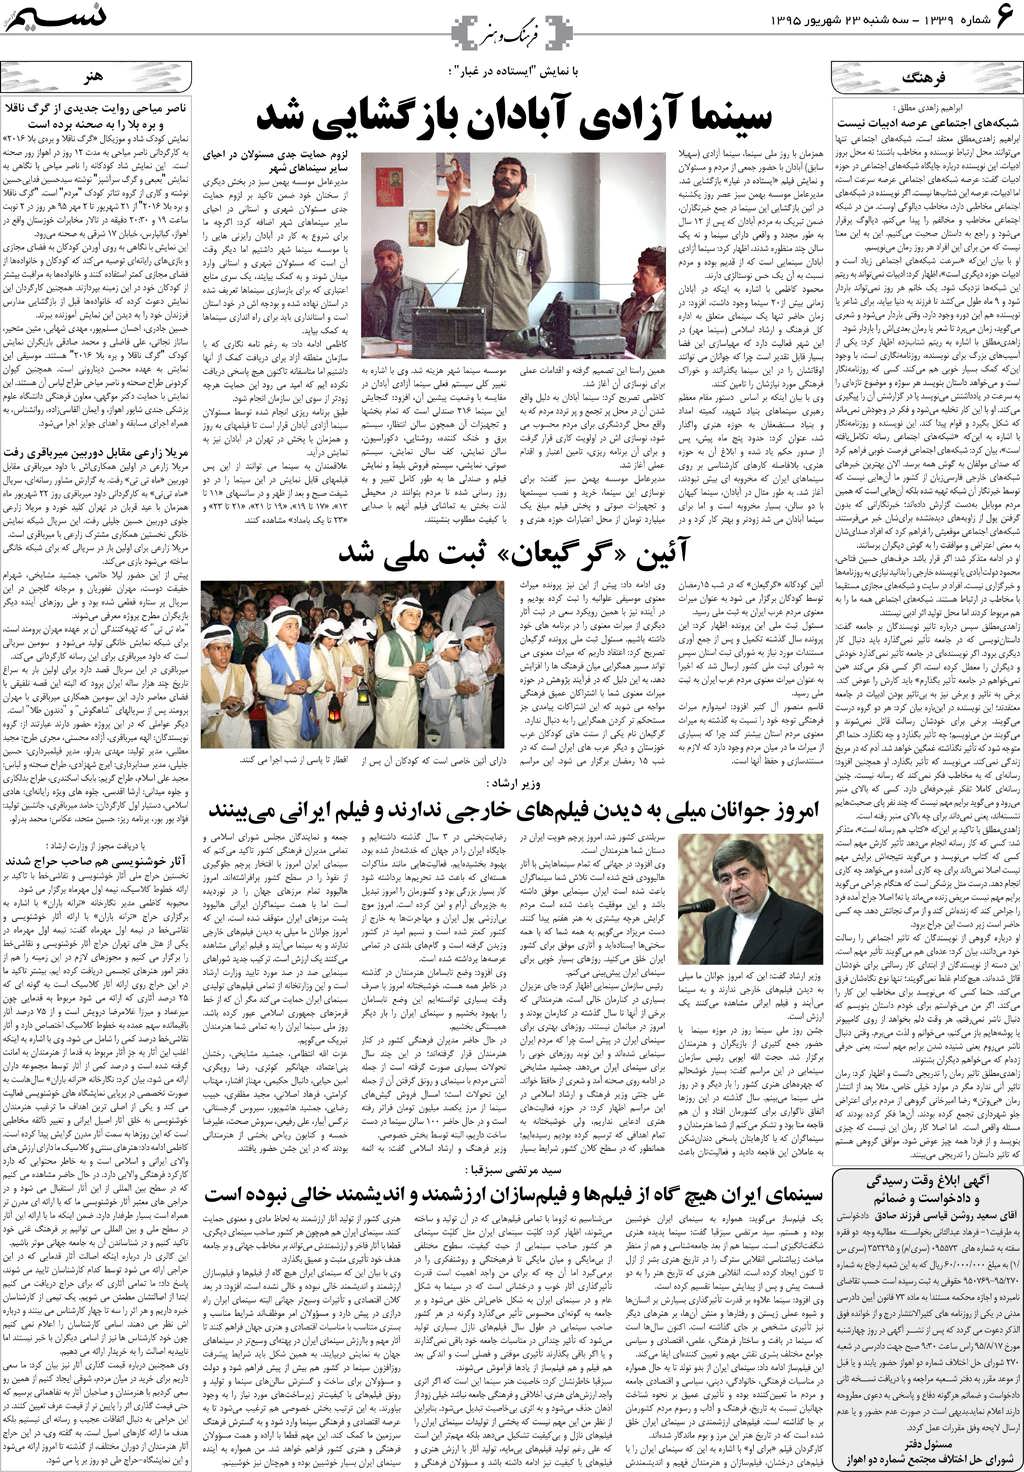 صفحه فرهنگ و هنر روزنامه نسیم شماره 1339